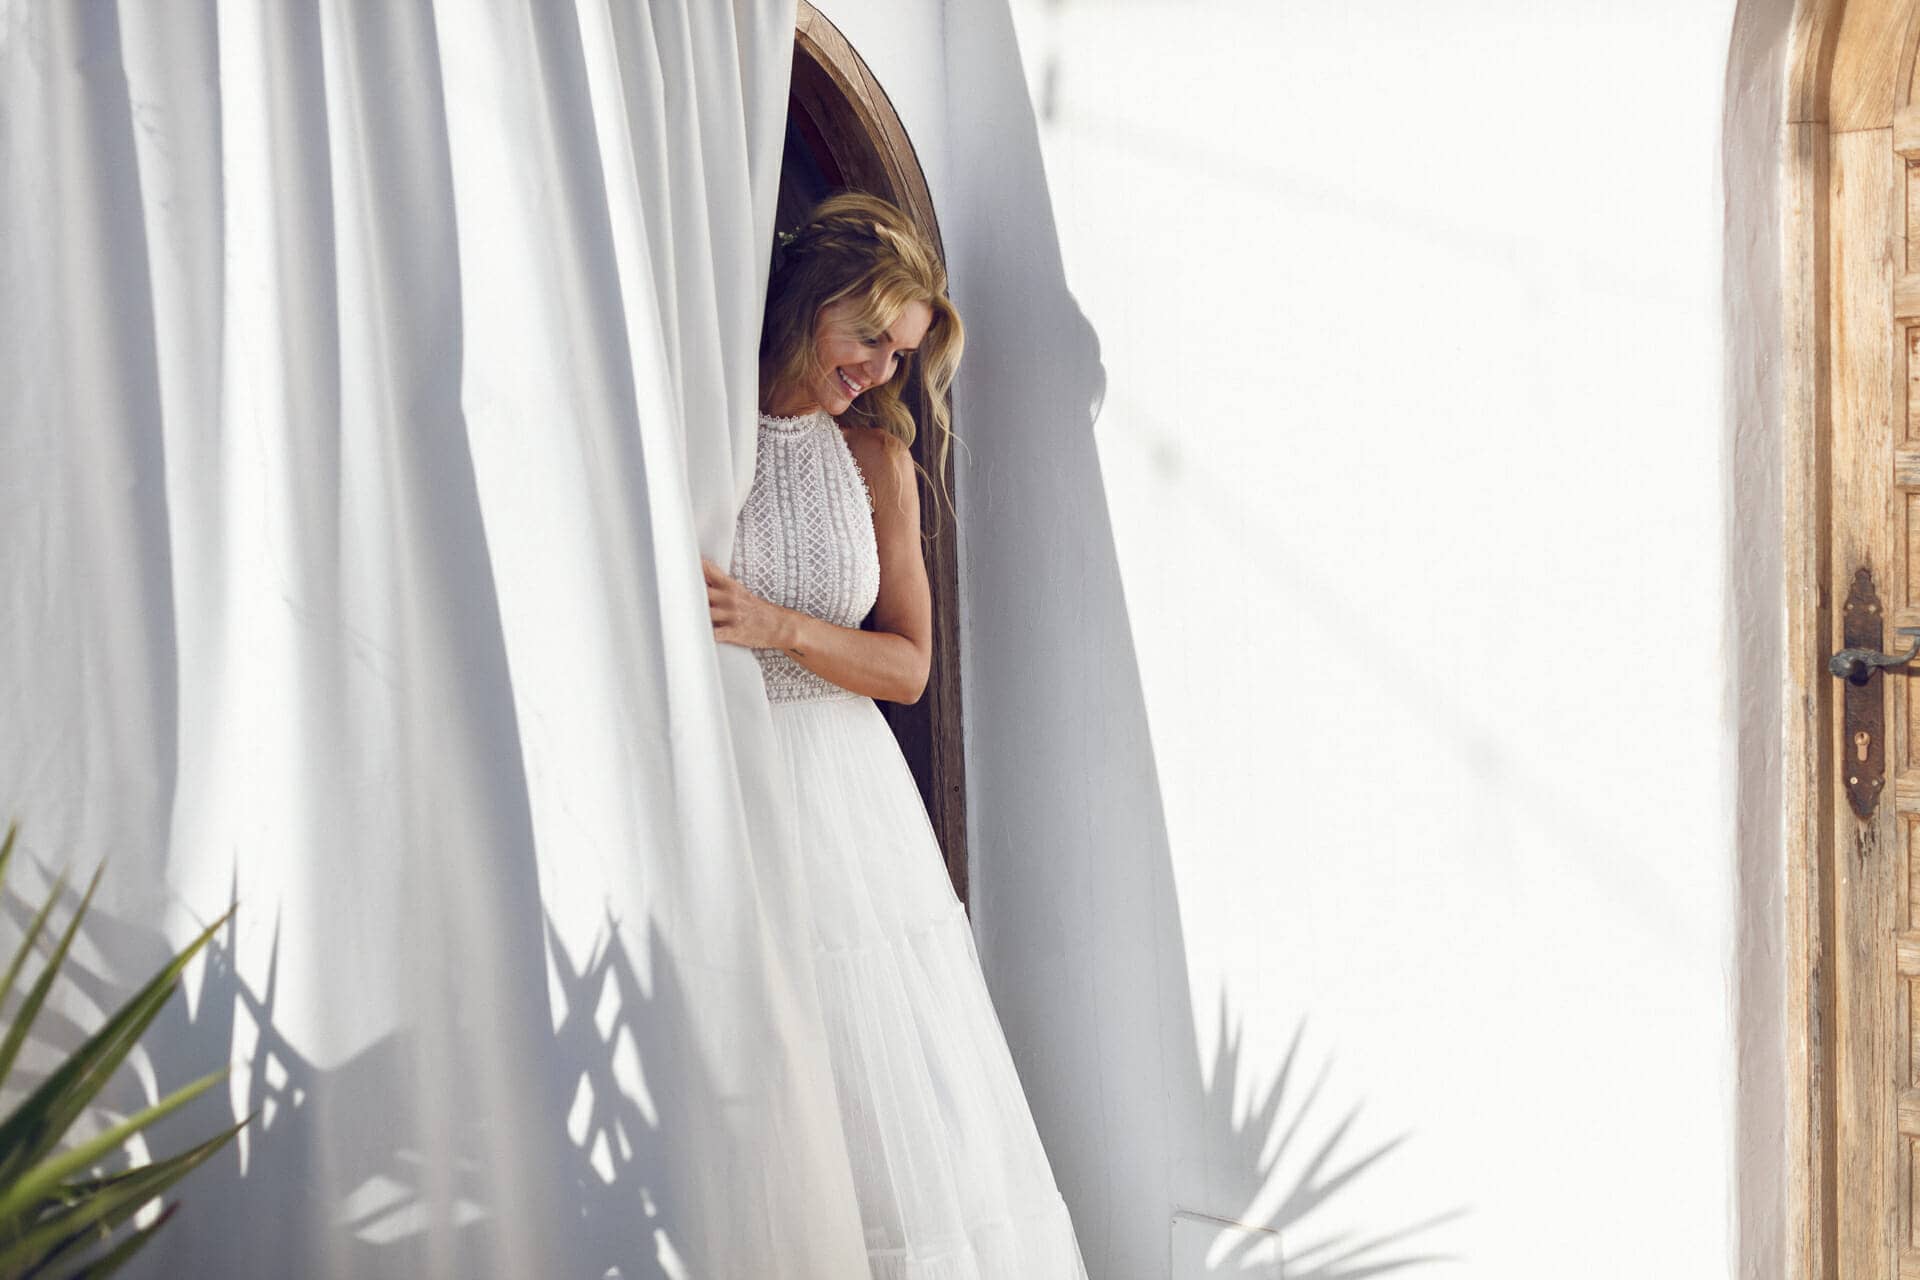 imagen de fotografo ibiza de novia timida junto a una cortina